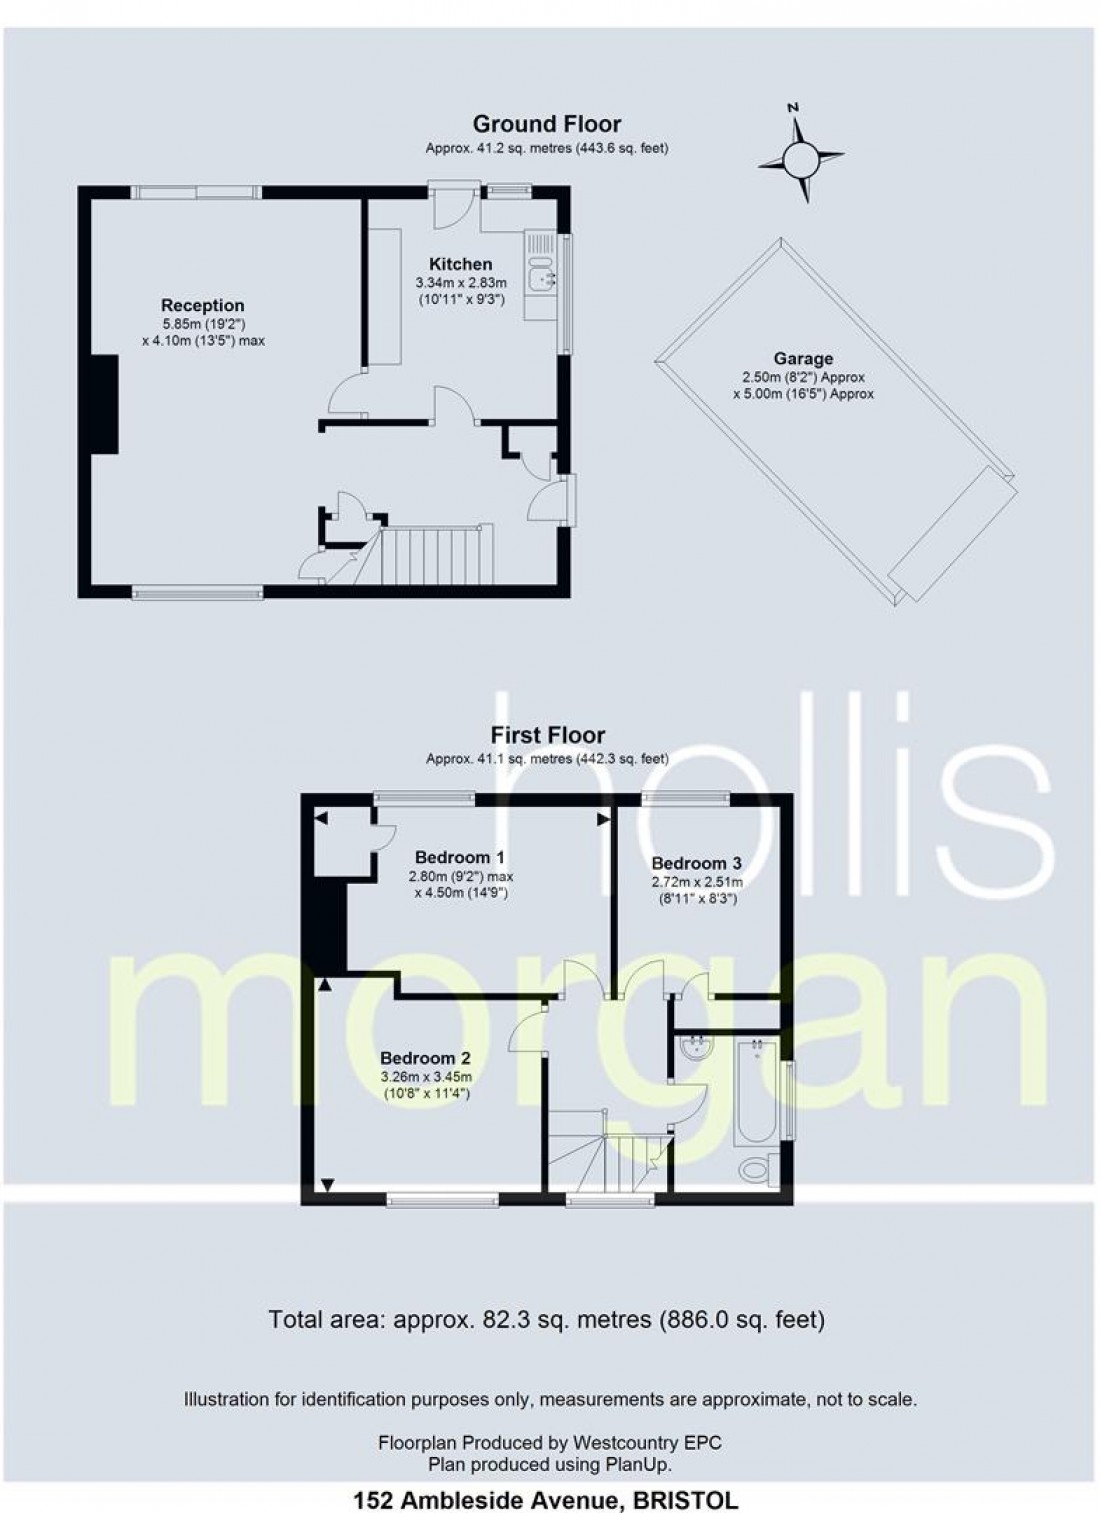 Floorplan for HOUSE ON CORNER PLOT FOR BASIC UPDATING